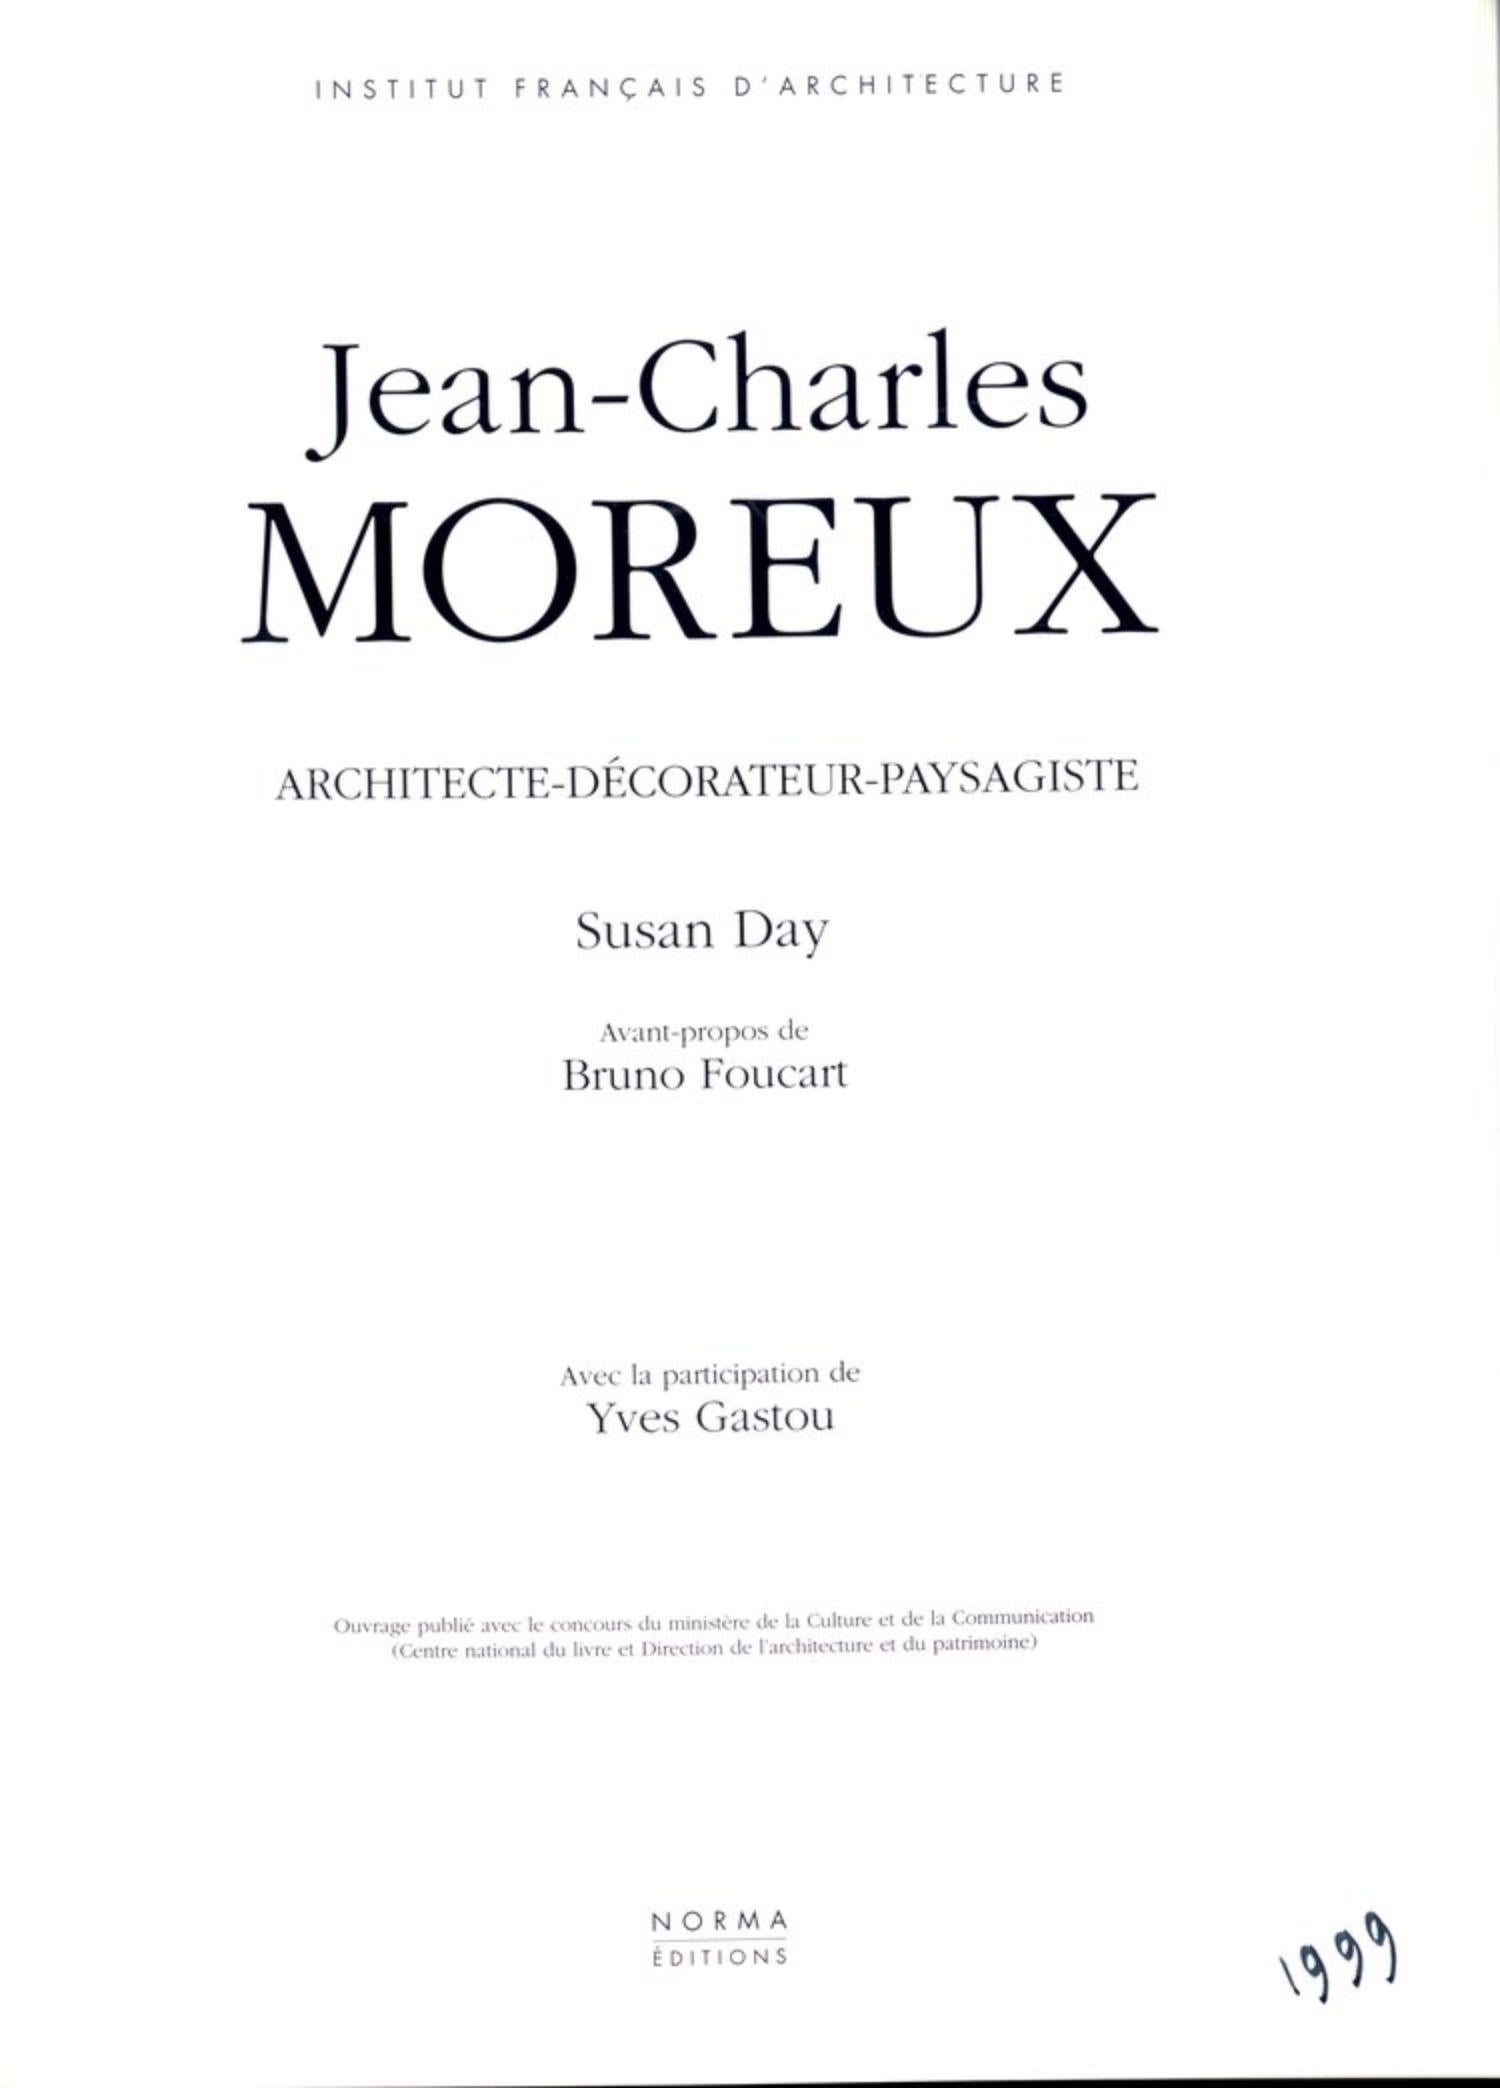 Französischer Art Deco Hocker/Bank aus handgeschmiedetem Eisen von Jean-Charles Moreux, um 1936. Inspiriert von Ludwig XV, Teil von Moreux' Gegenentwurf zum Funktionalismus

Abgebildet mit passenden Sesseln. Dieses Angebot gilt nur für den